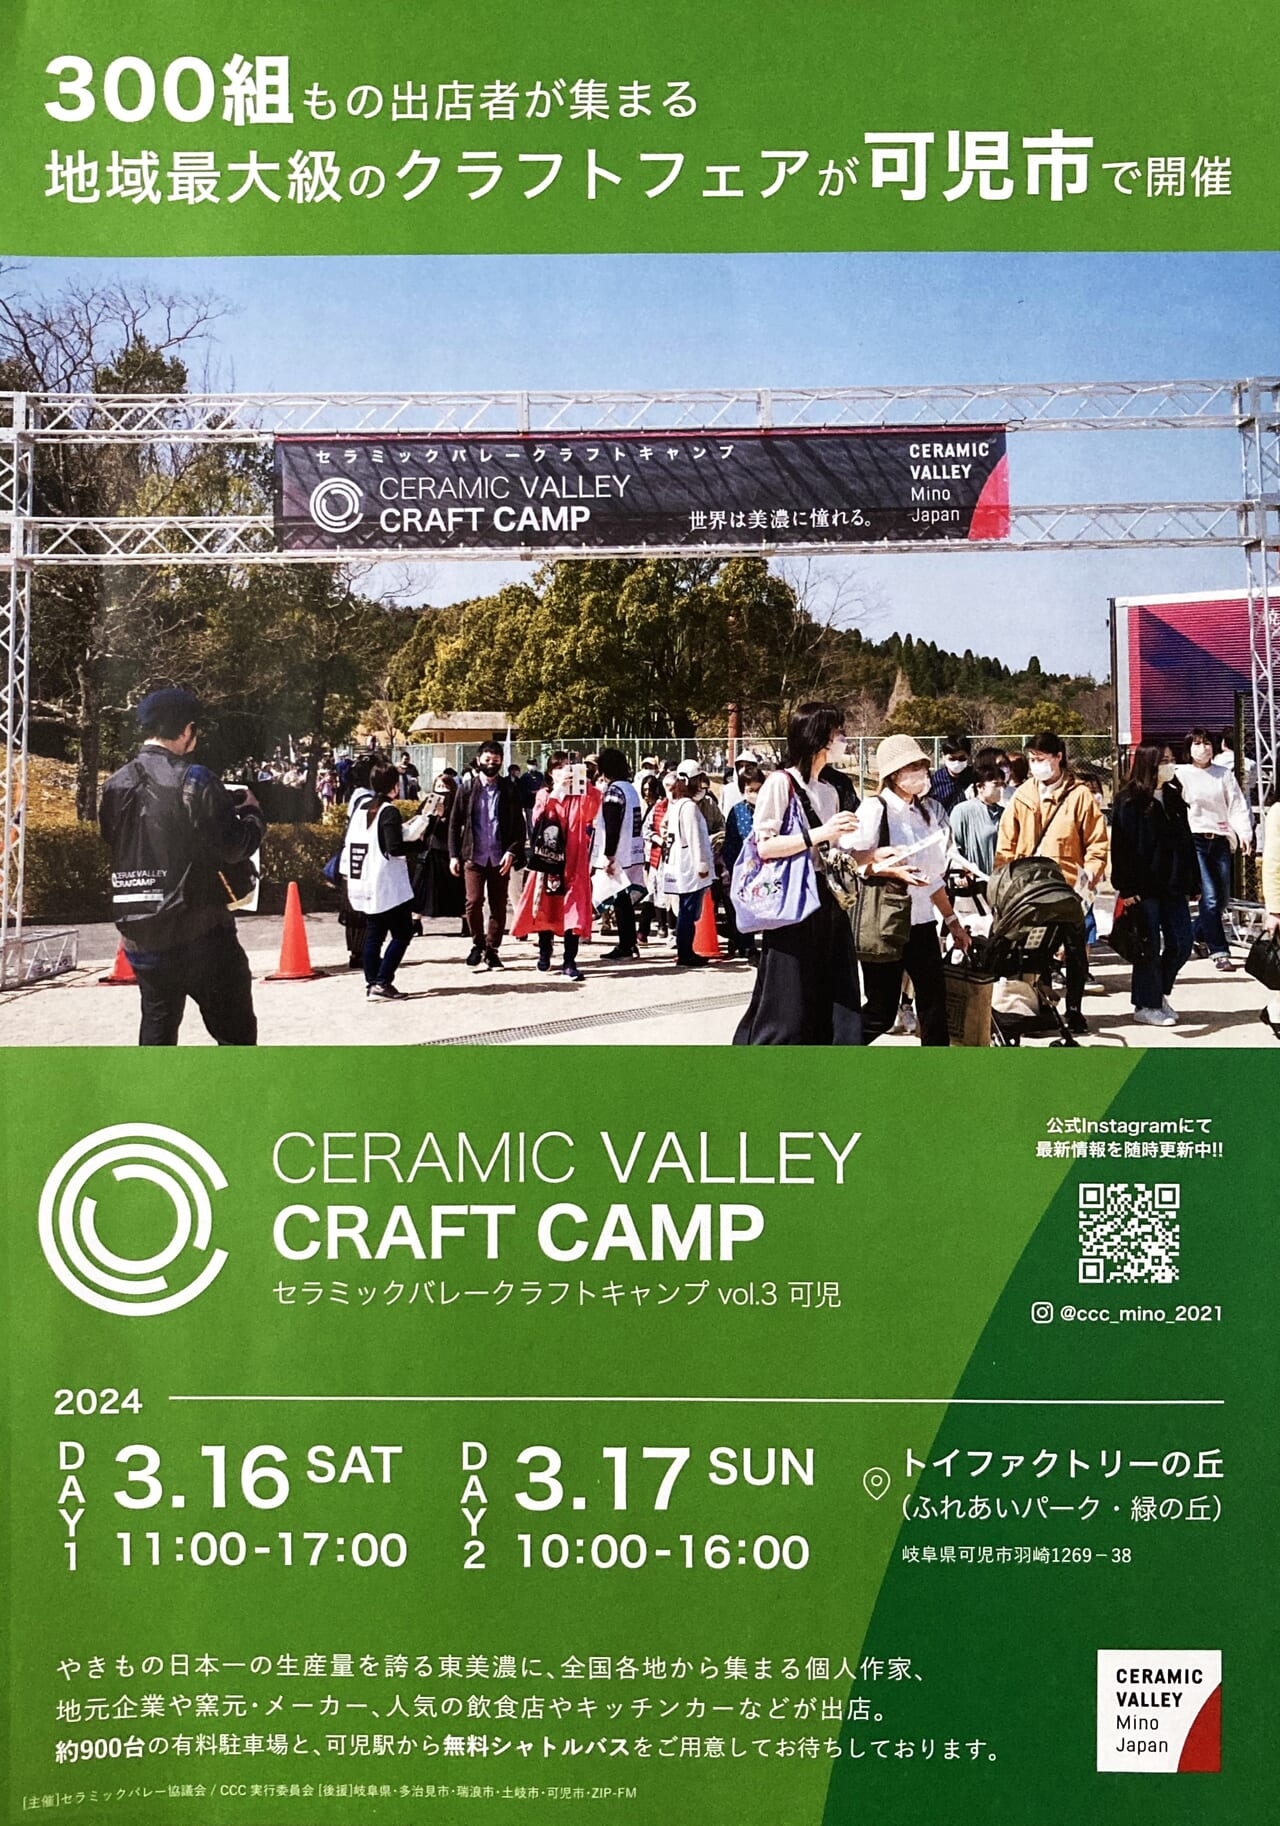 CERAMIC VALLEY CRAFT CAMP